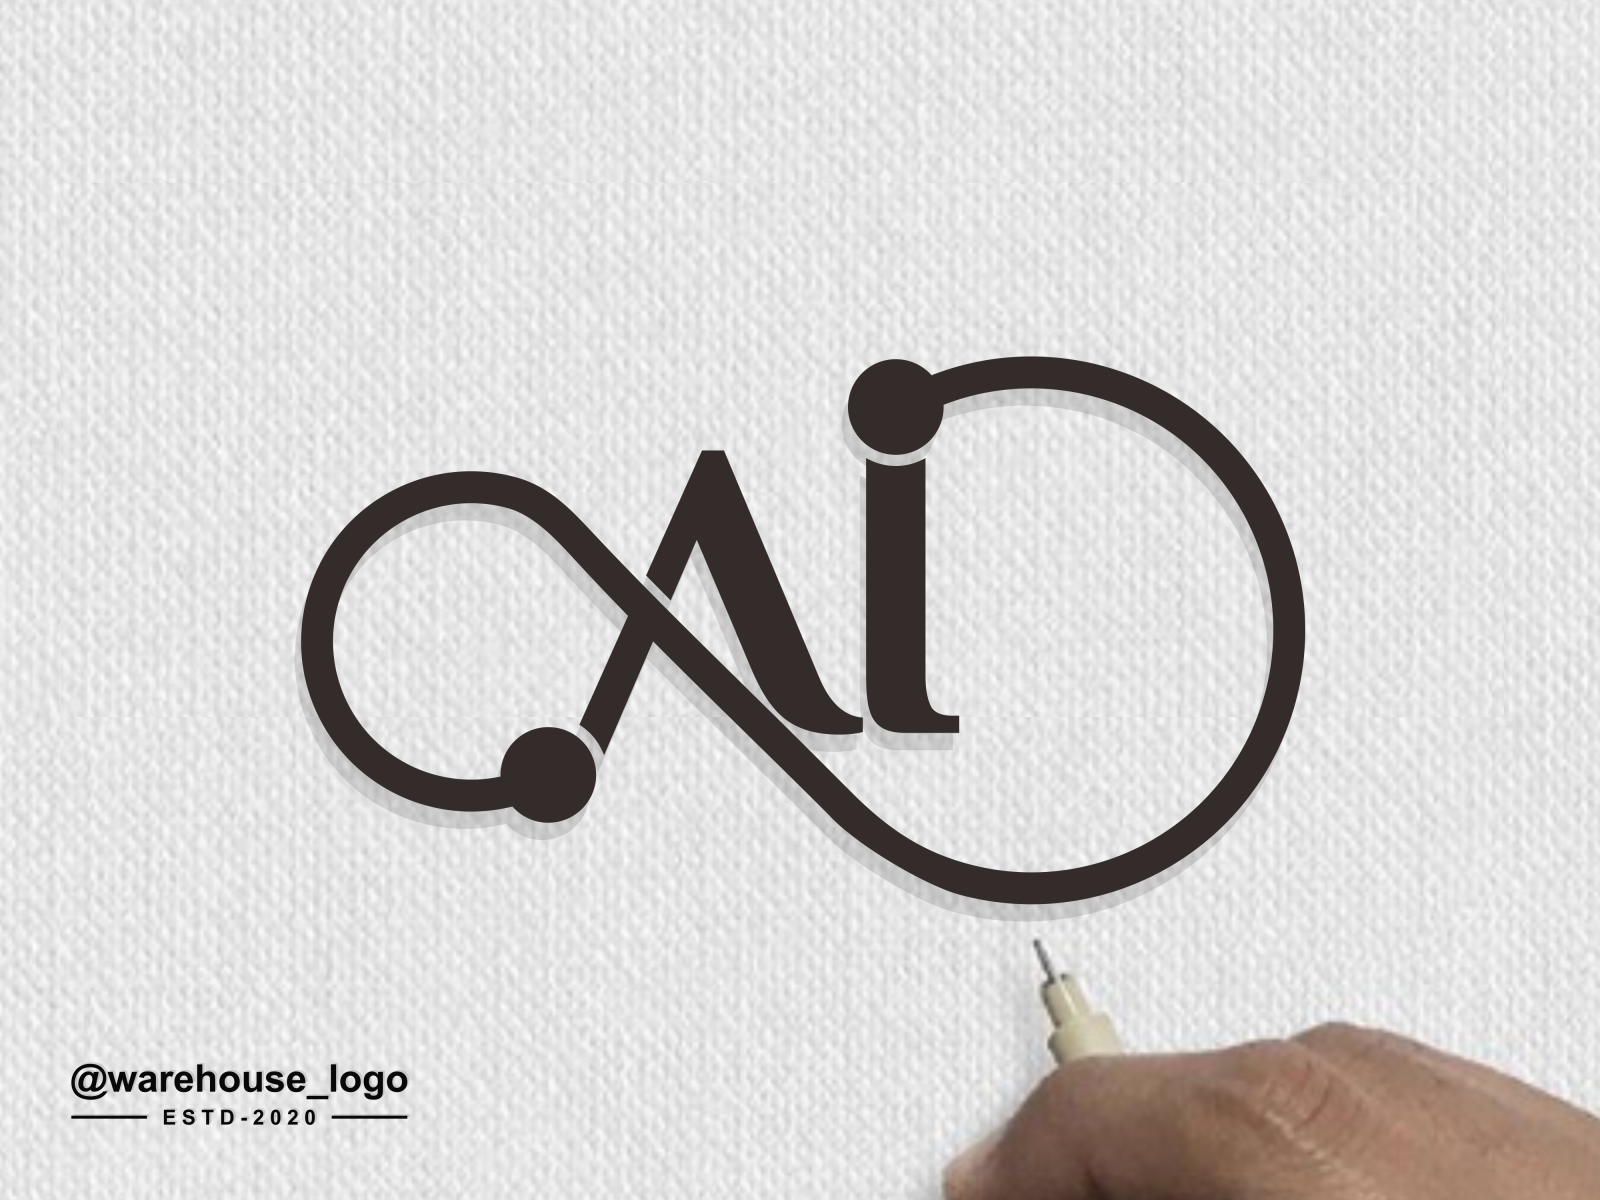 ai logo idea by warehouse_logo on Dribbble